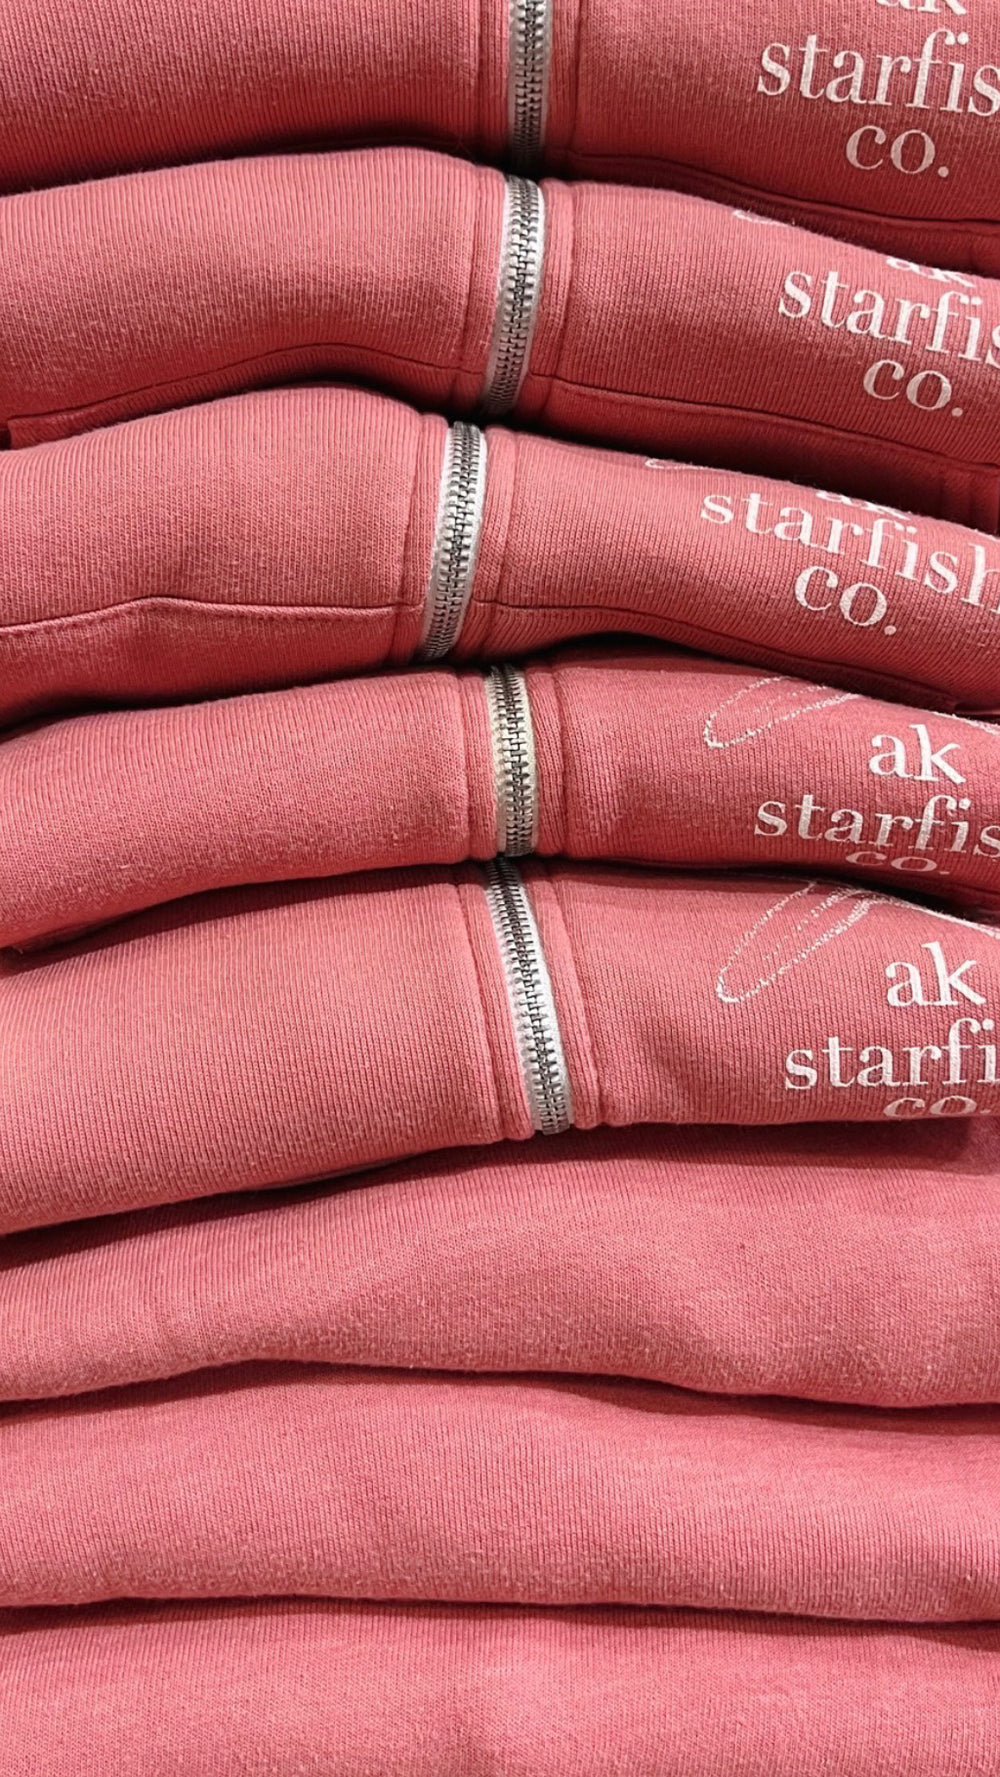 AK Starfish Co. Winter Pink 50/50 Zipped Hoody $69.00